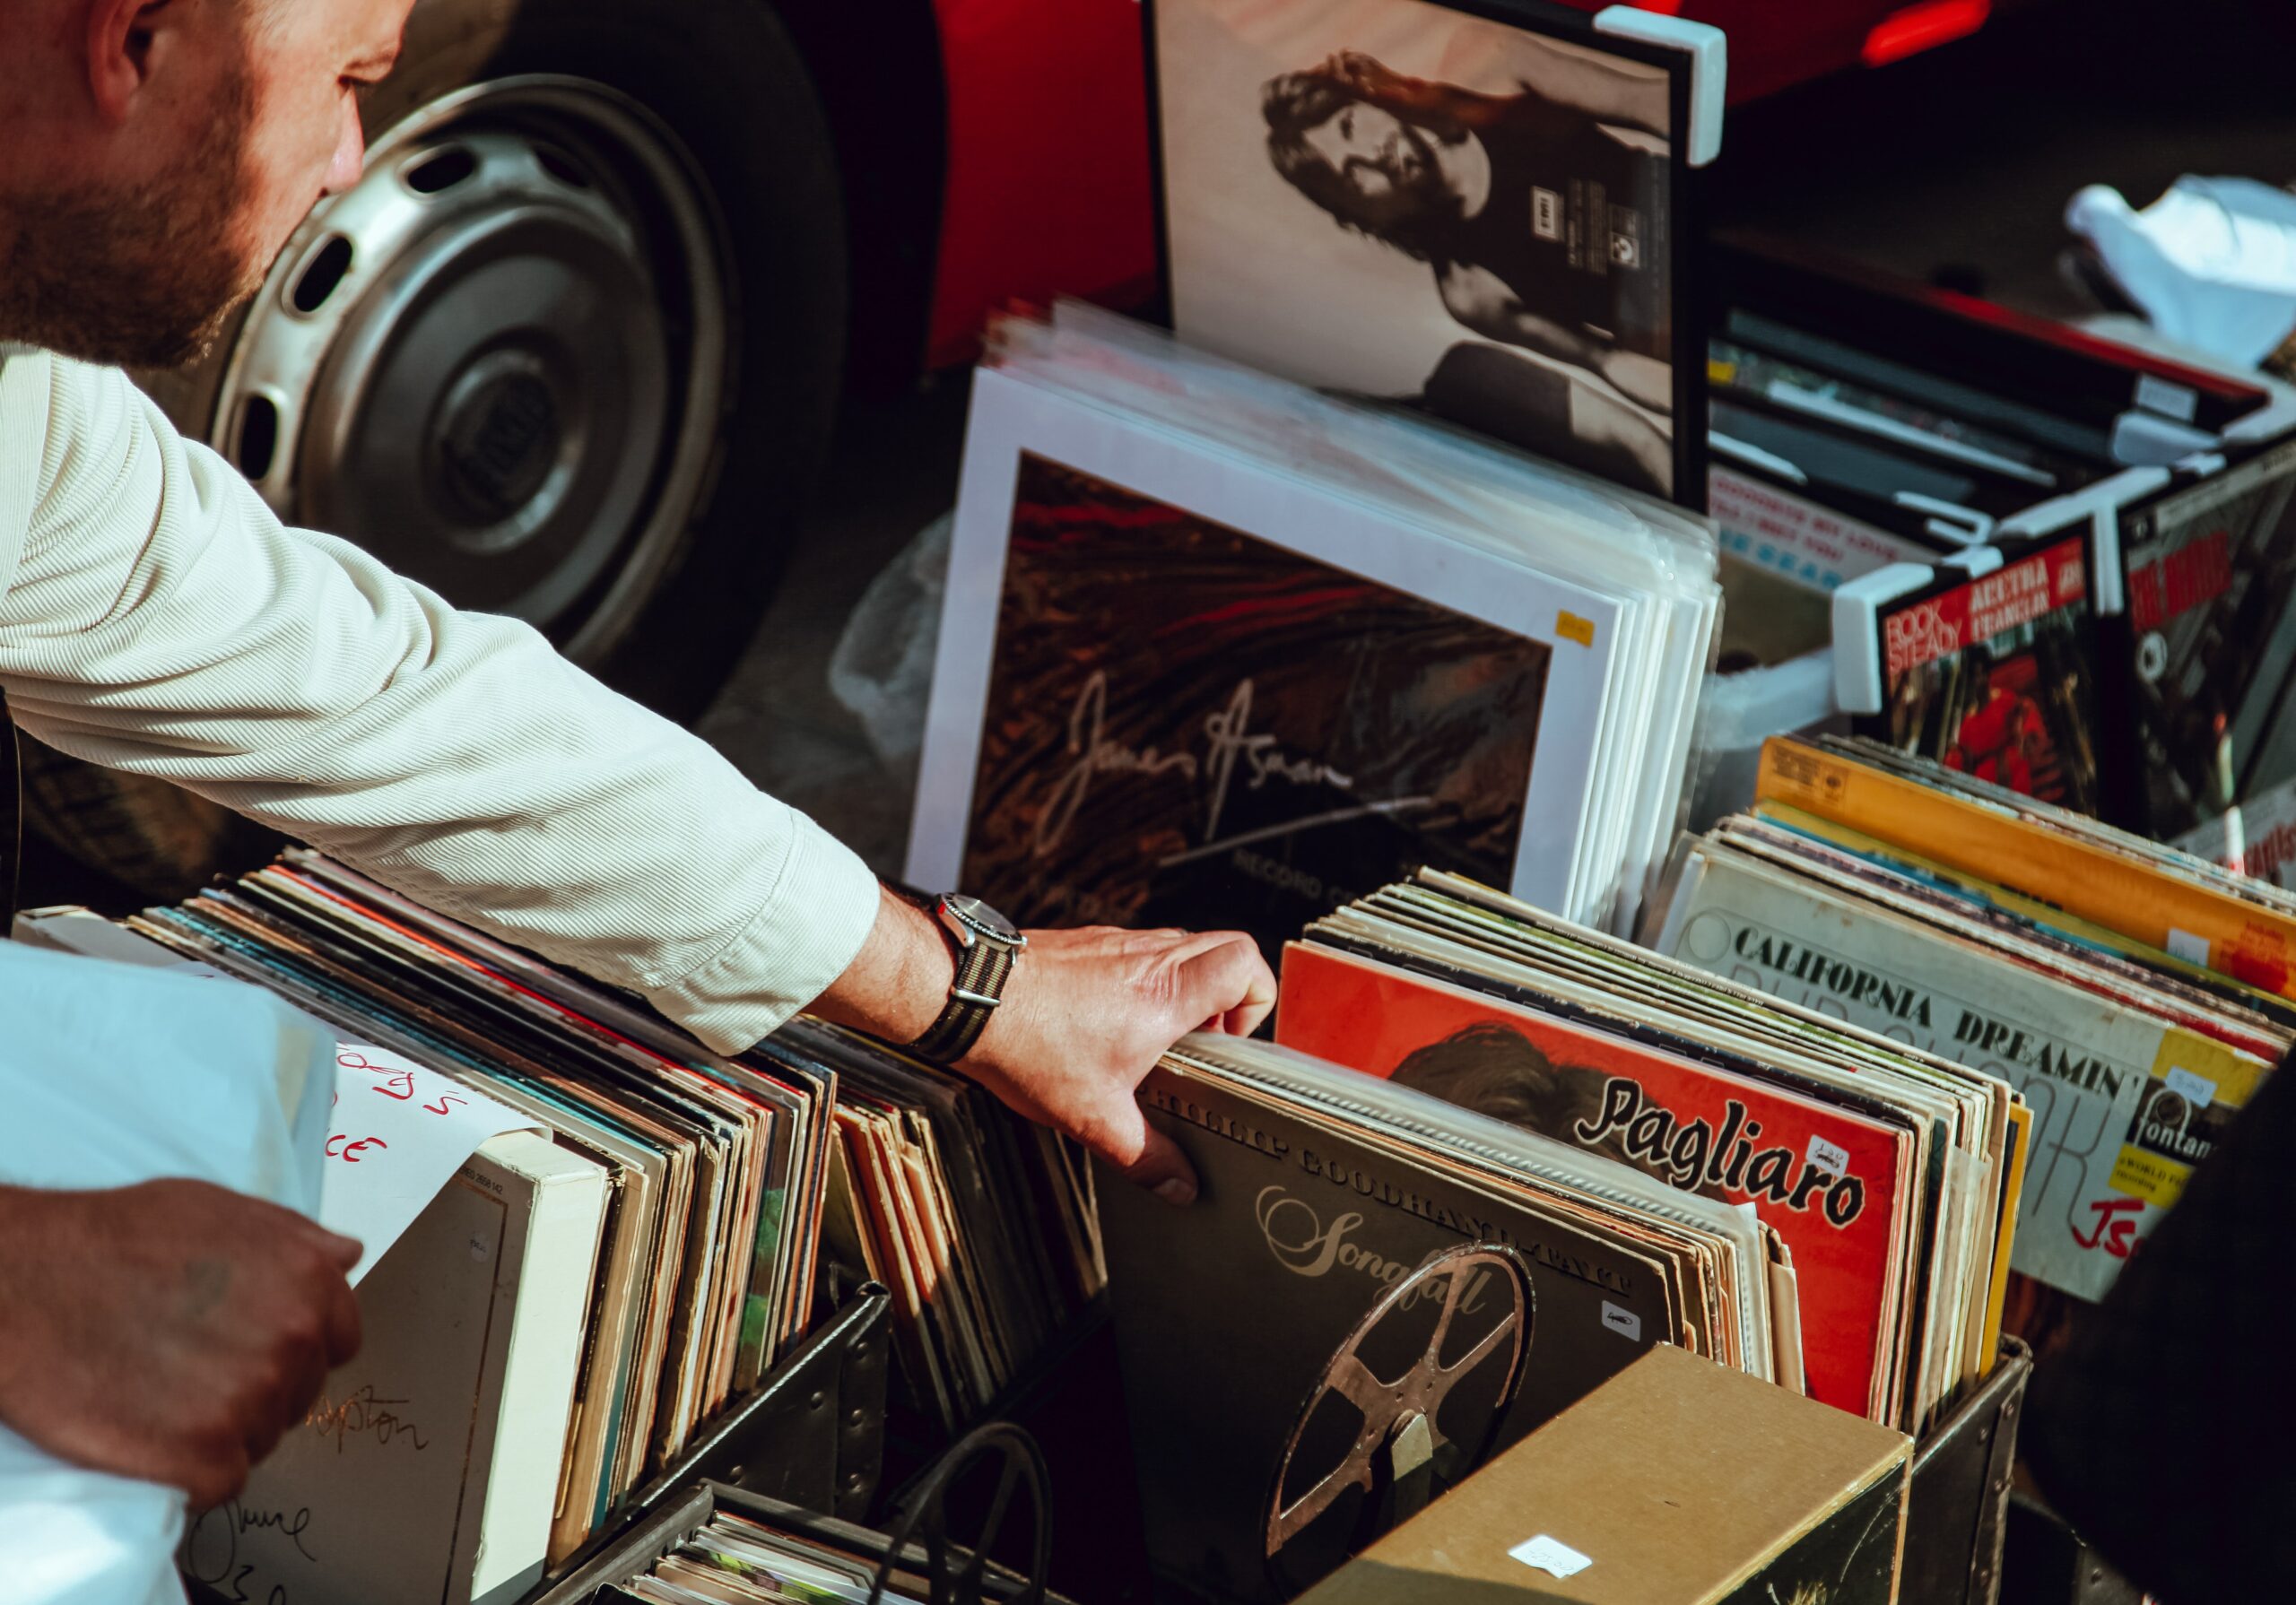 A hand flicks through a collection of vinyl records